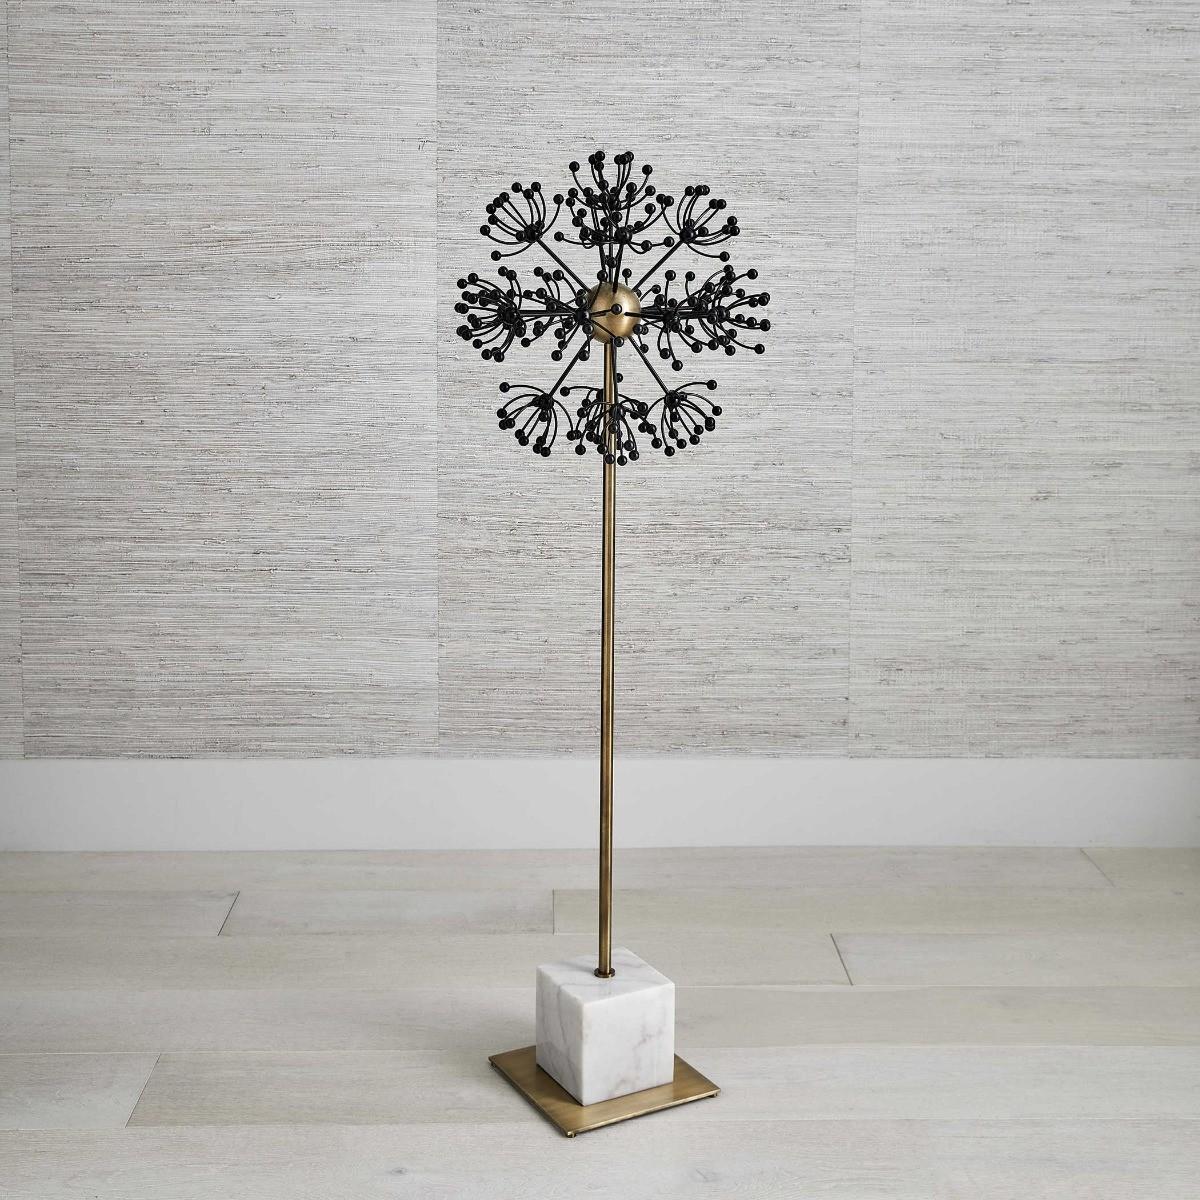 Black Label Dandelion Sculpture - 137cm